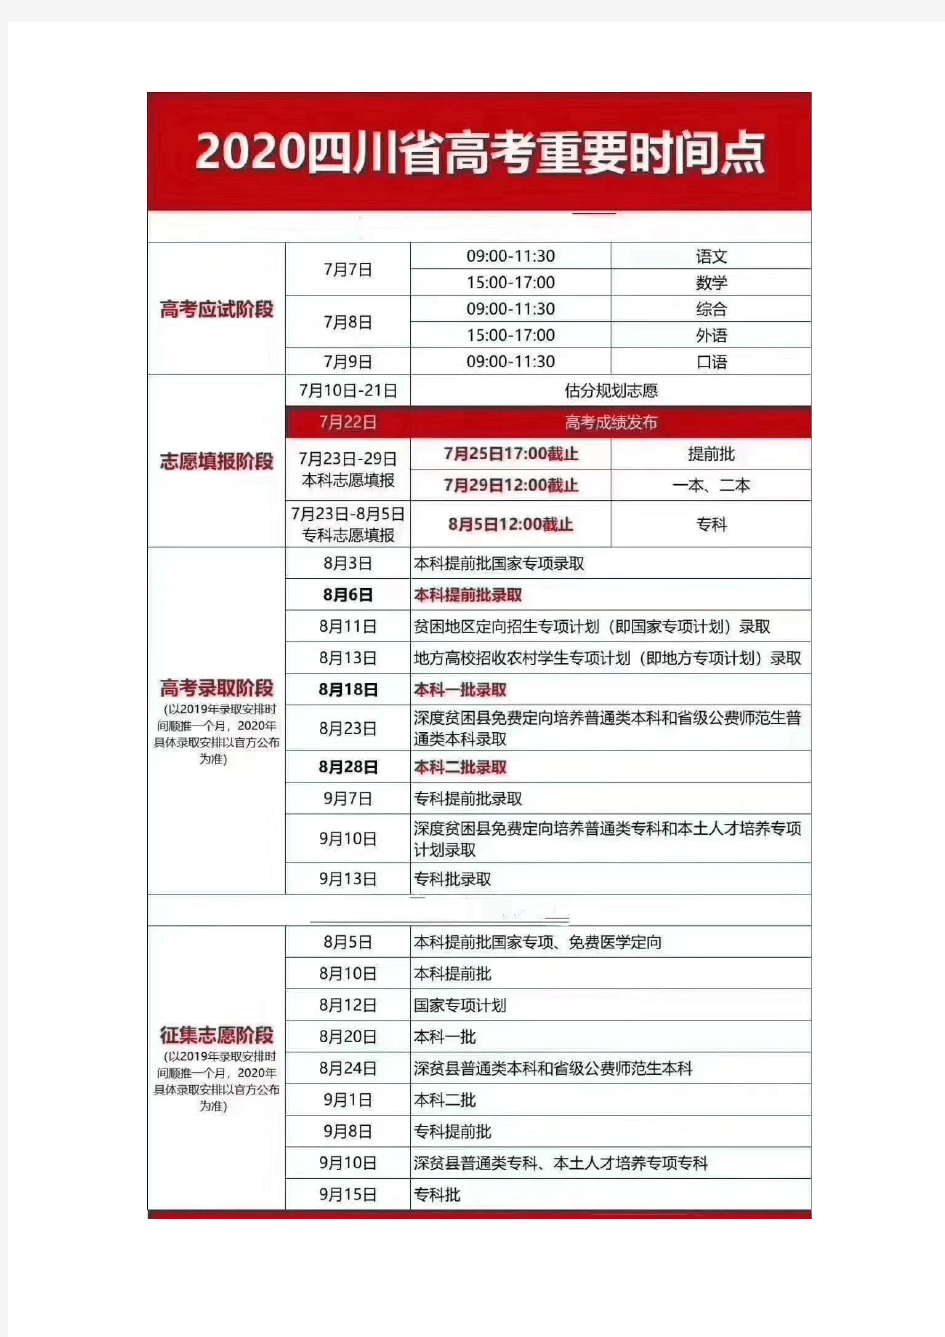 2020四川省高考到志愿填报重要时间点